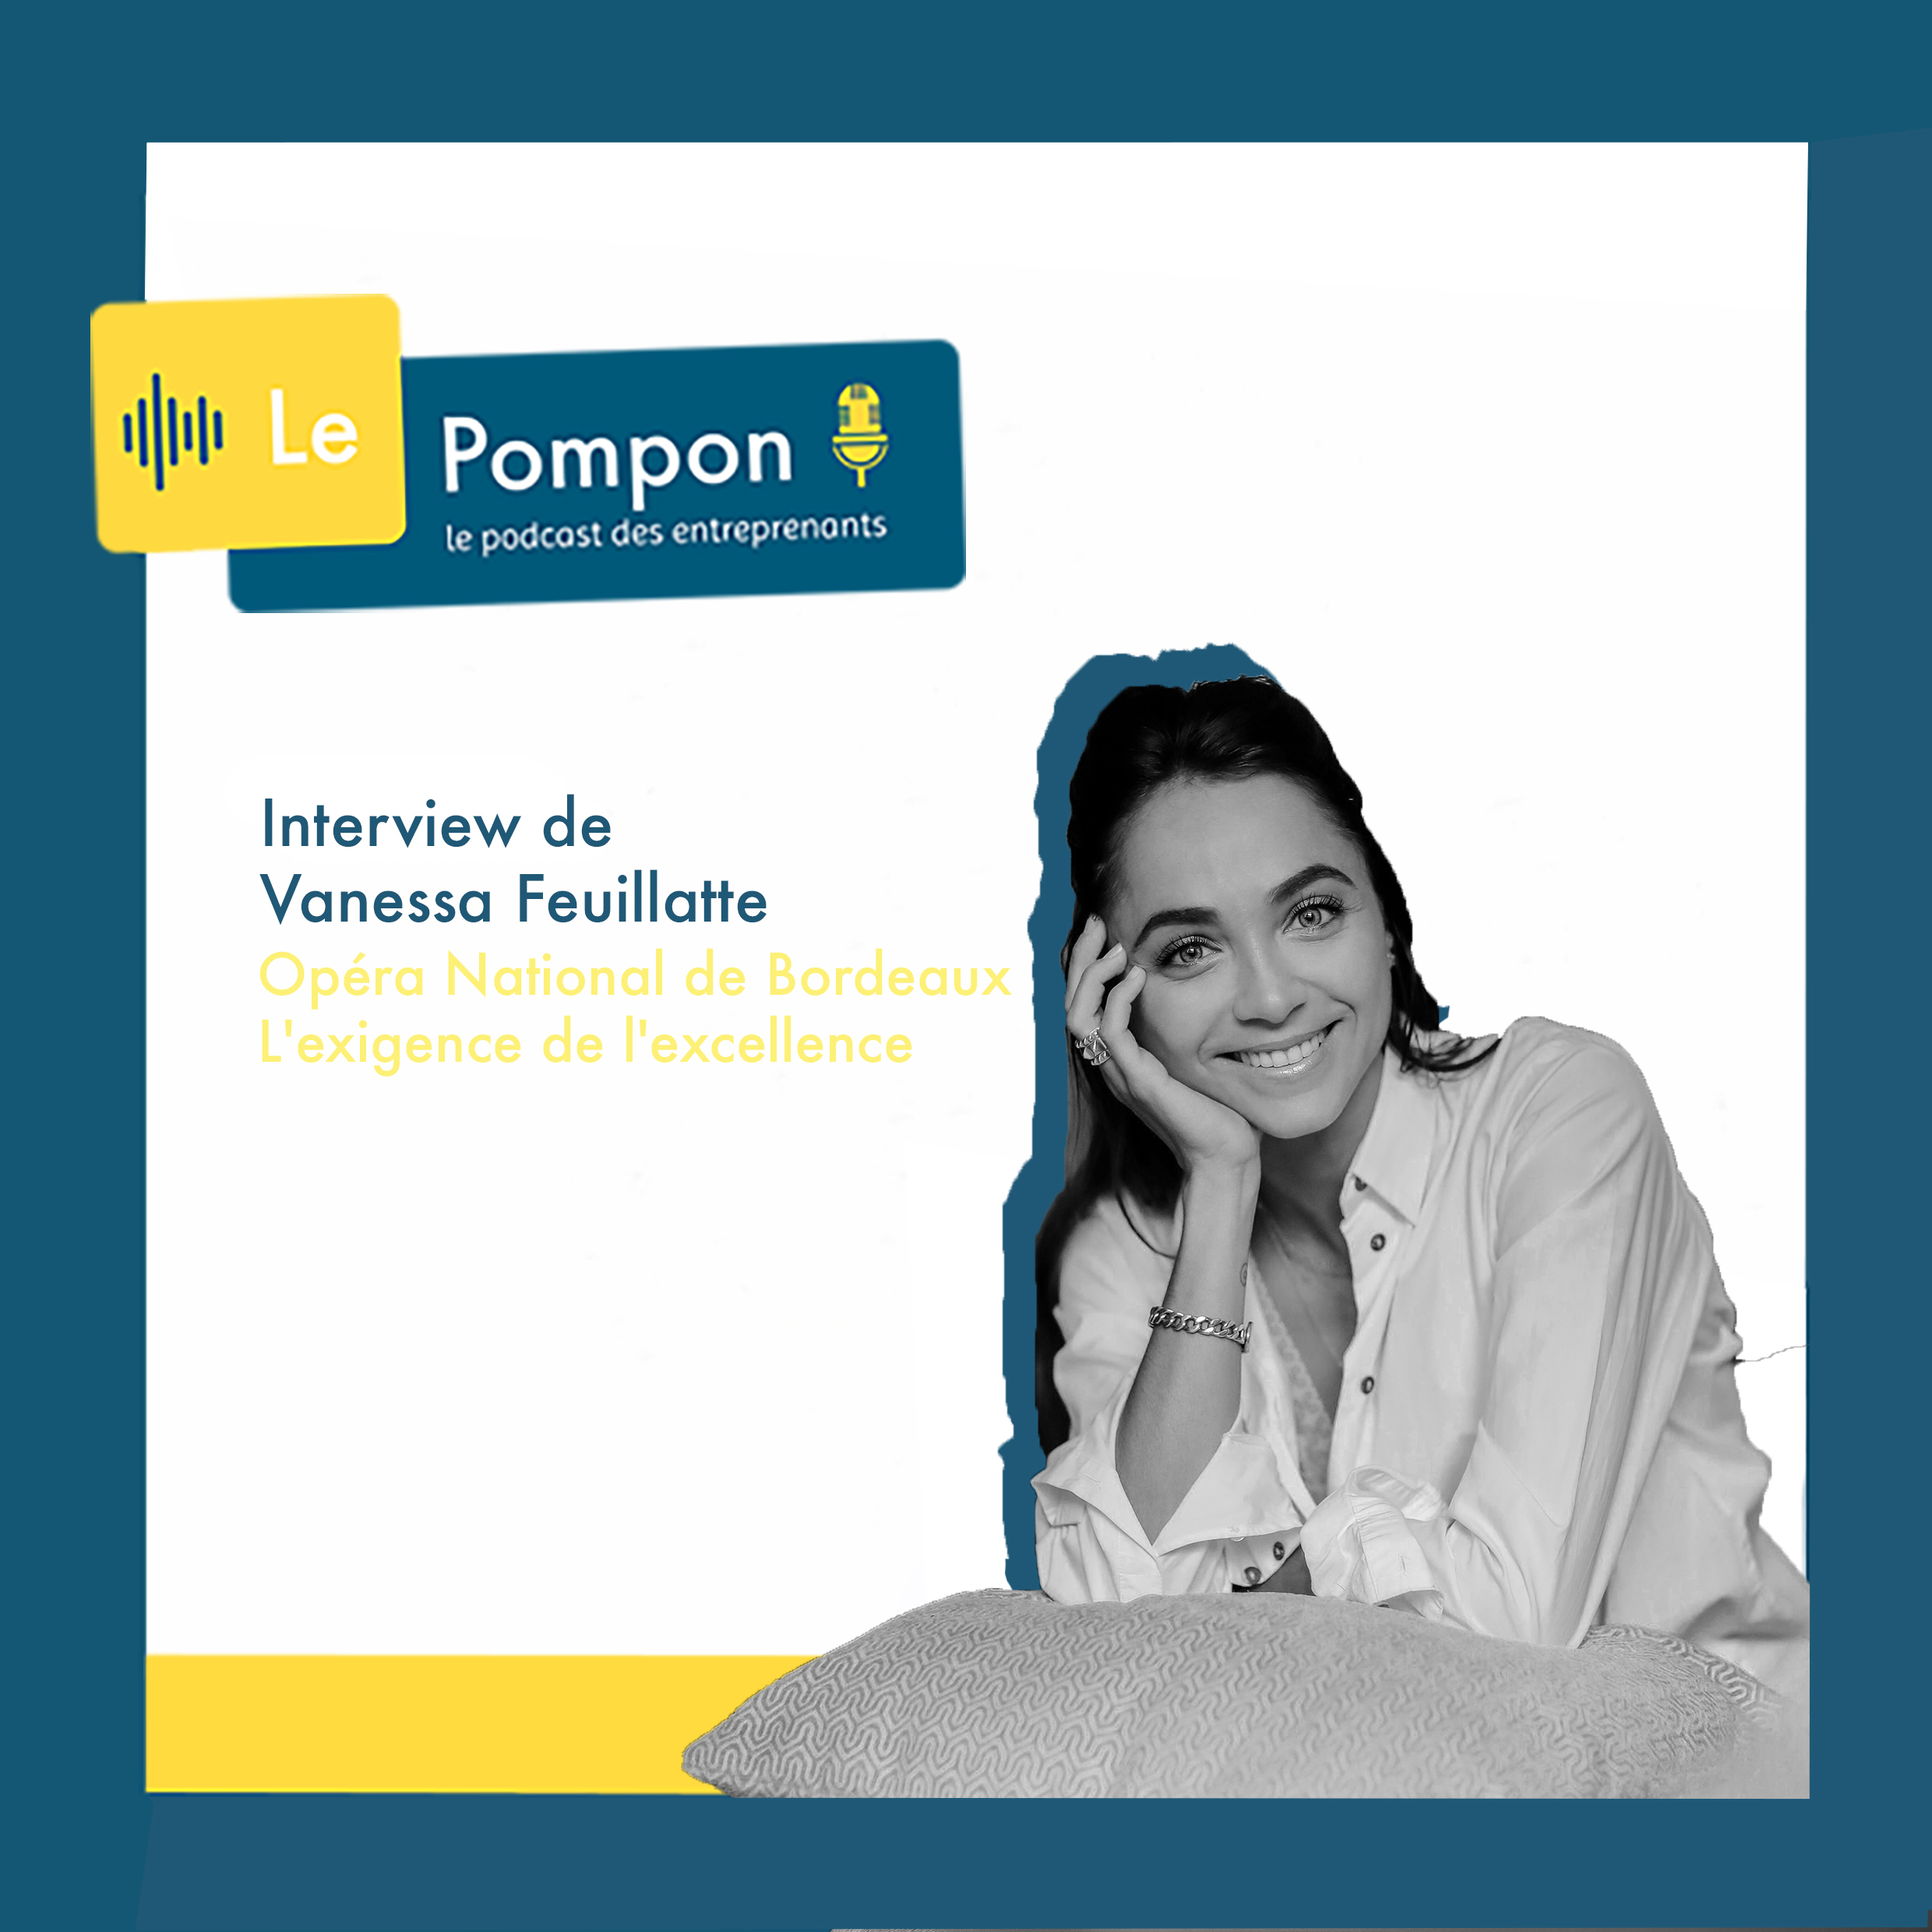 Illustration de l'épisode 11 du Podcast Le Pompon : Vanessa Feuillate, Première danseuse de l’Opéra National de Bordeaux